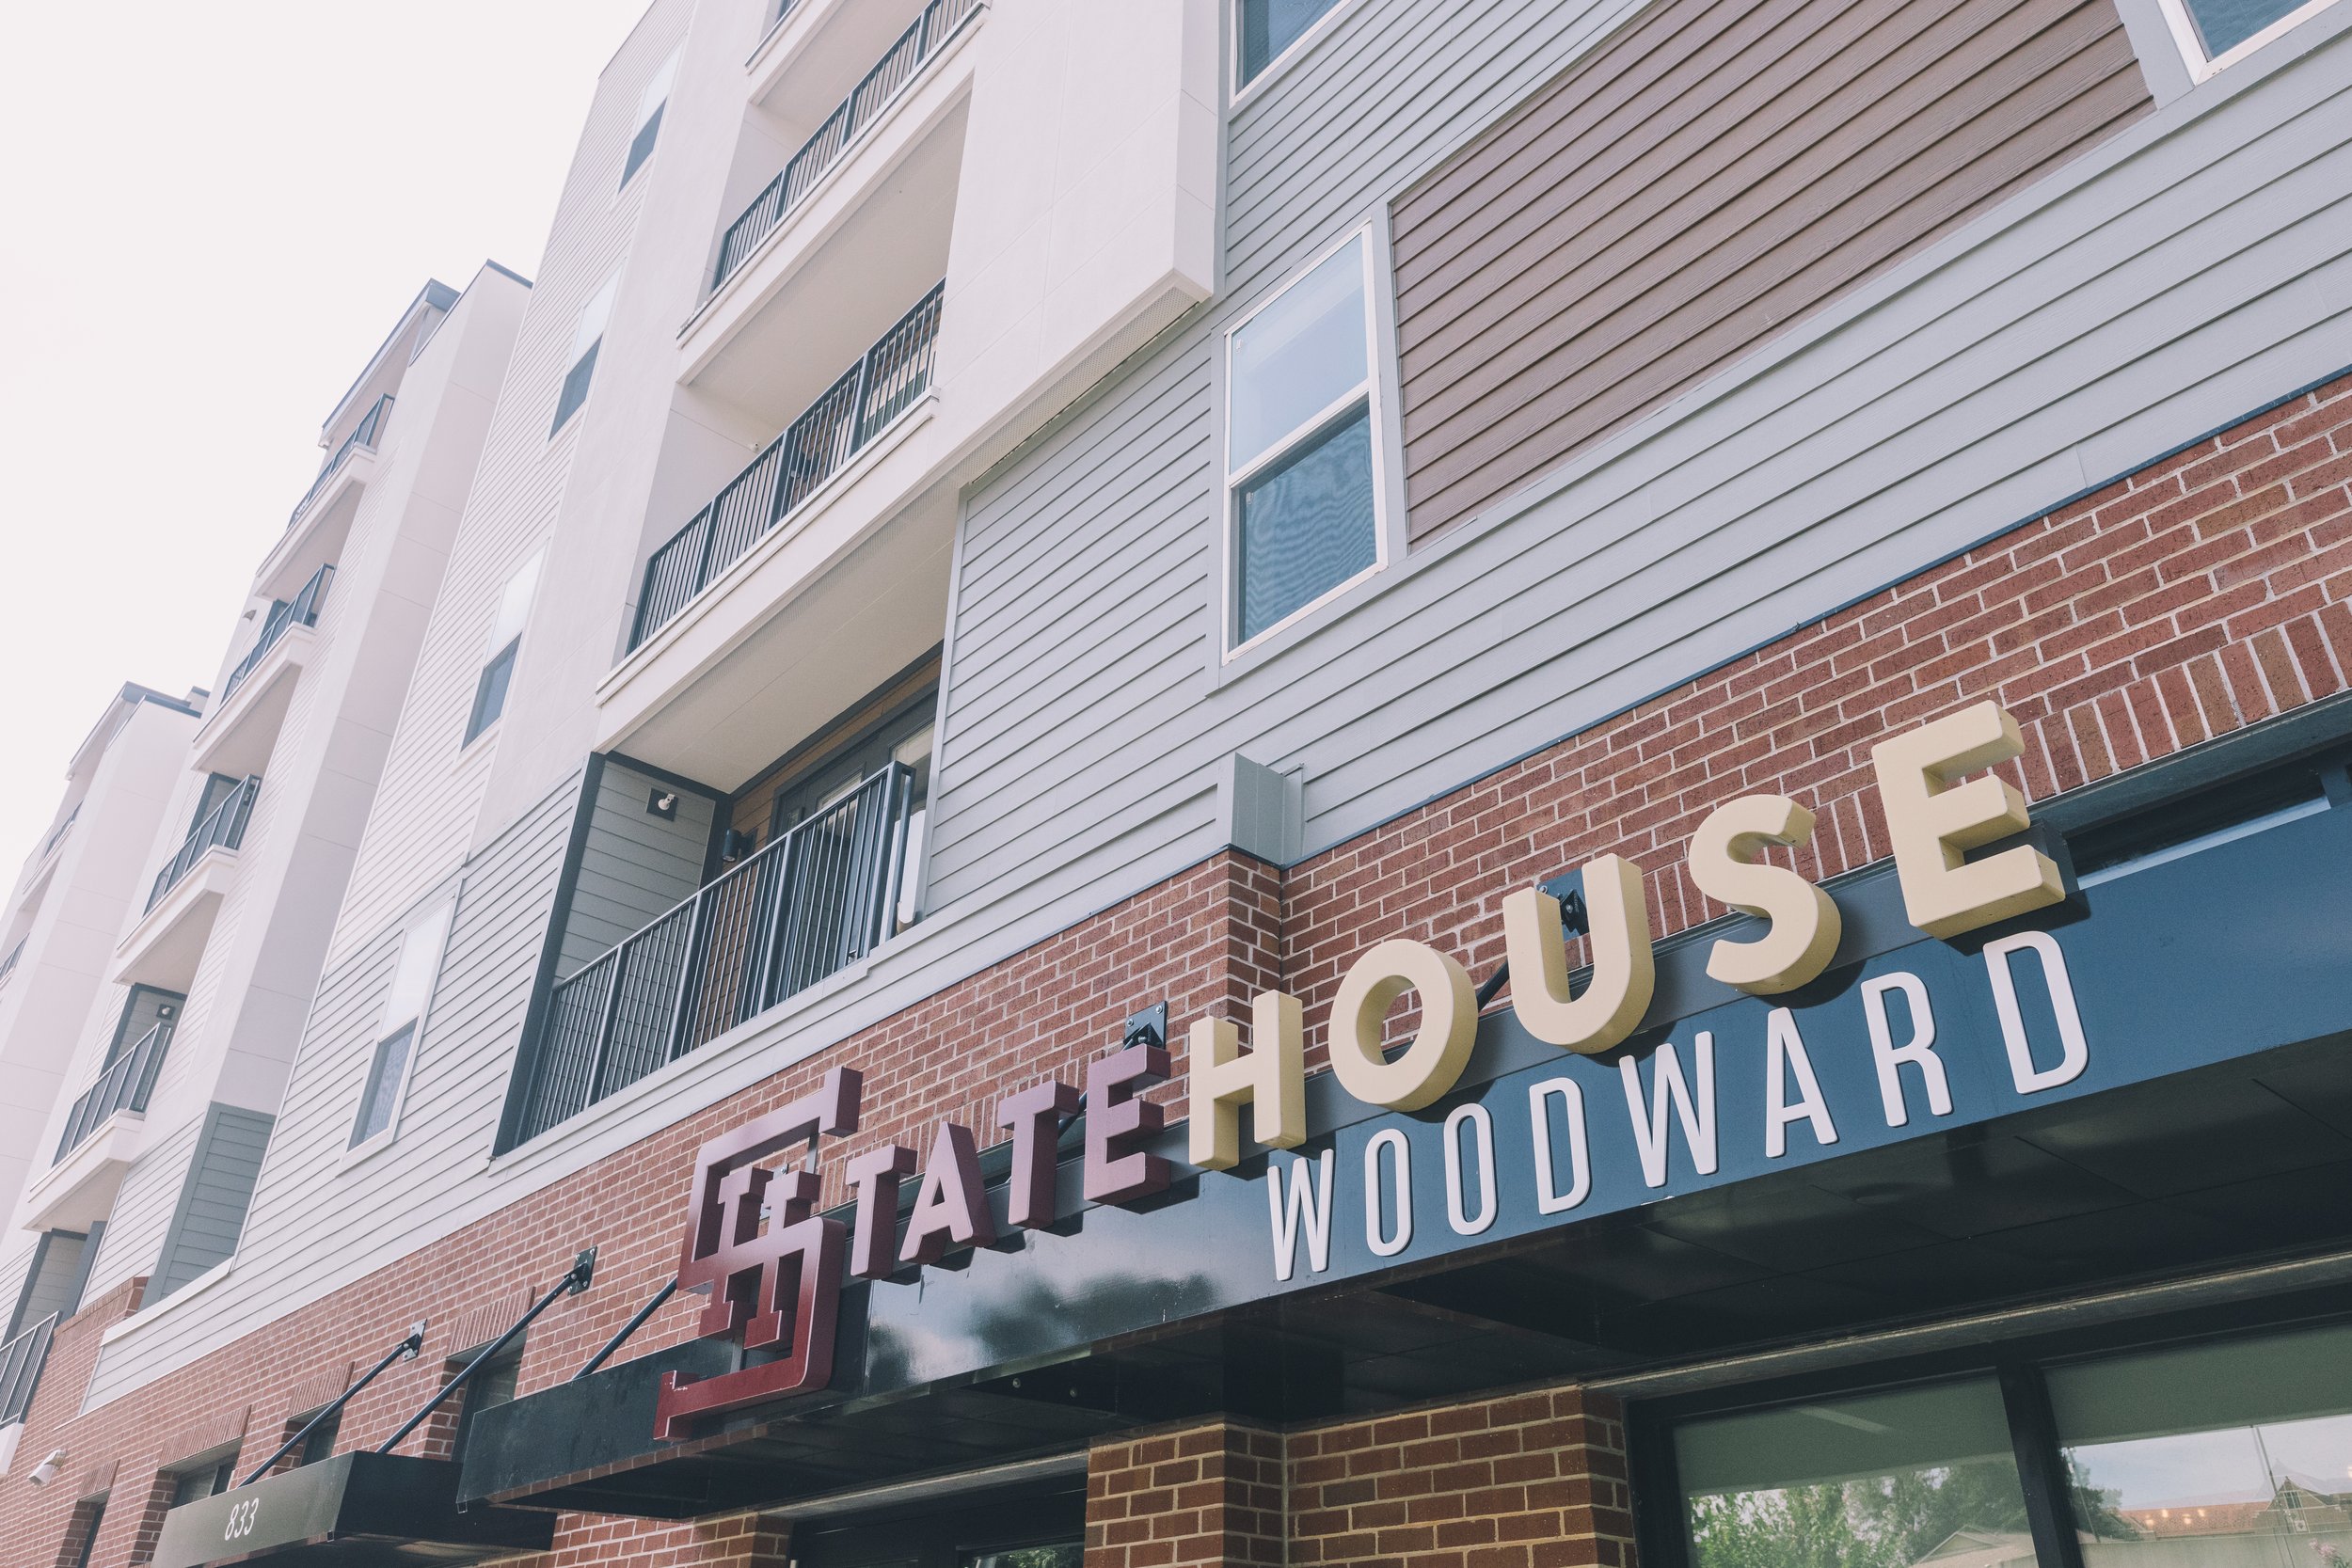 StateHouse Woodward